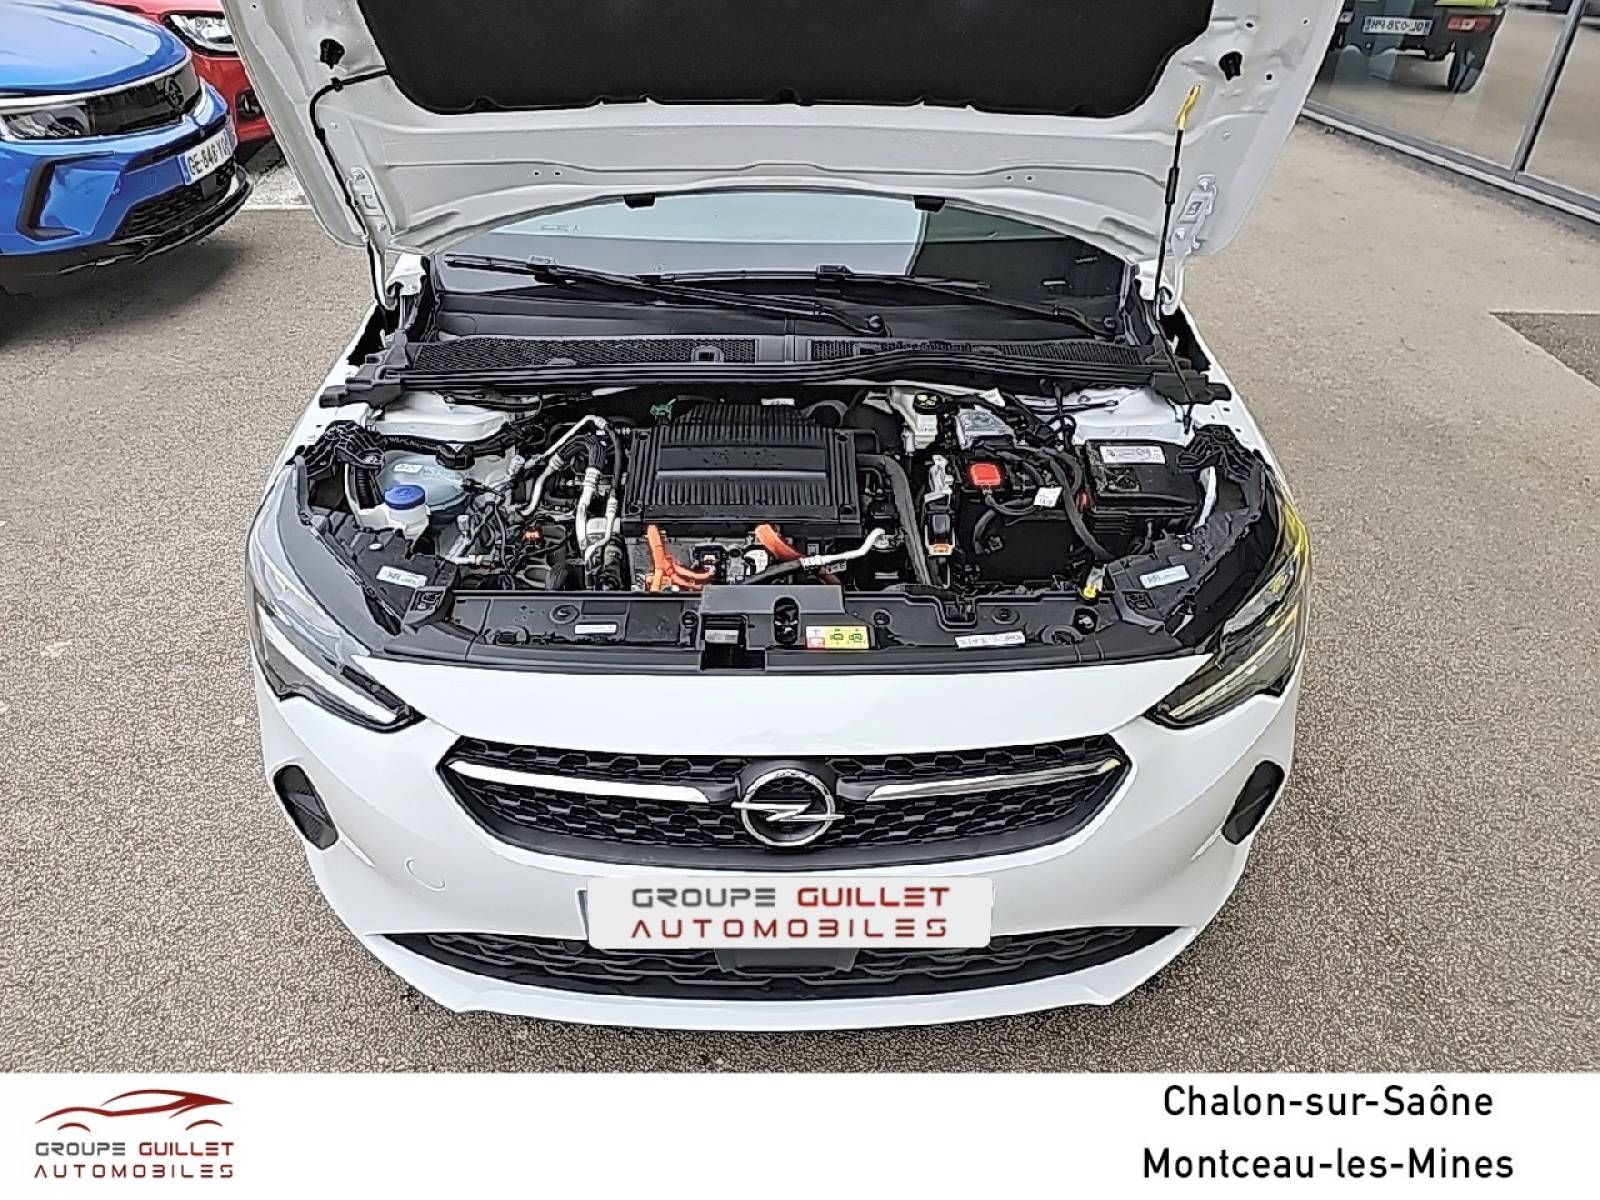 OPEL Corsa Electrique 136 ch & Batterie 50 kWh - véhicule d'occasion - Groupe Guillet - Opel Magicauto Chalon - 71380 - Saint-Marcel - 13